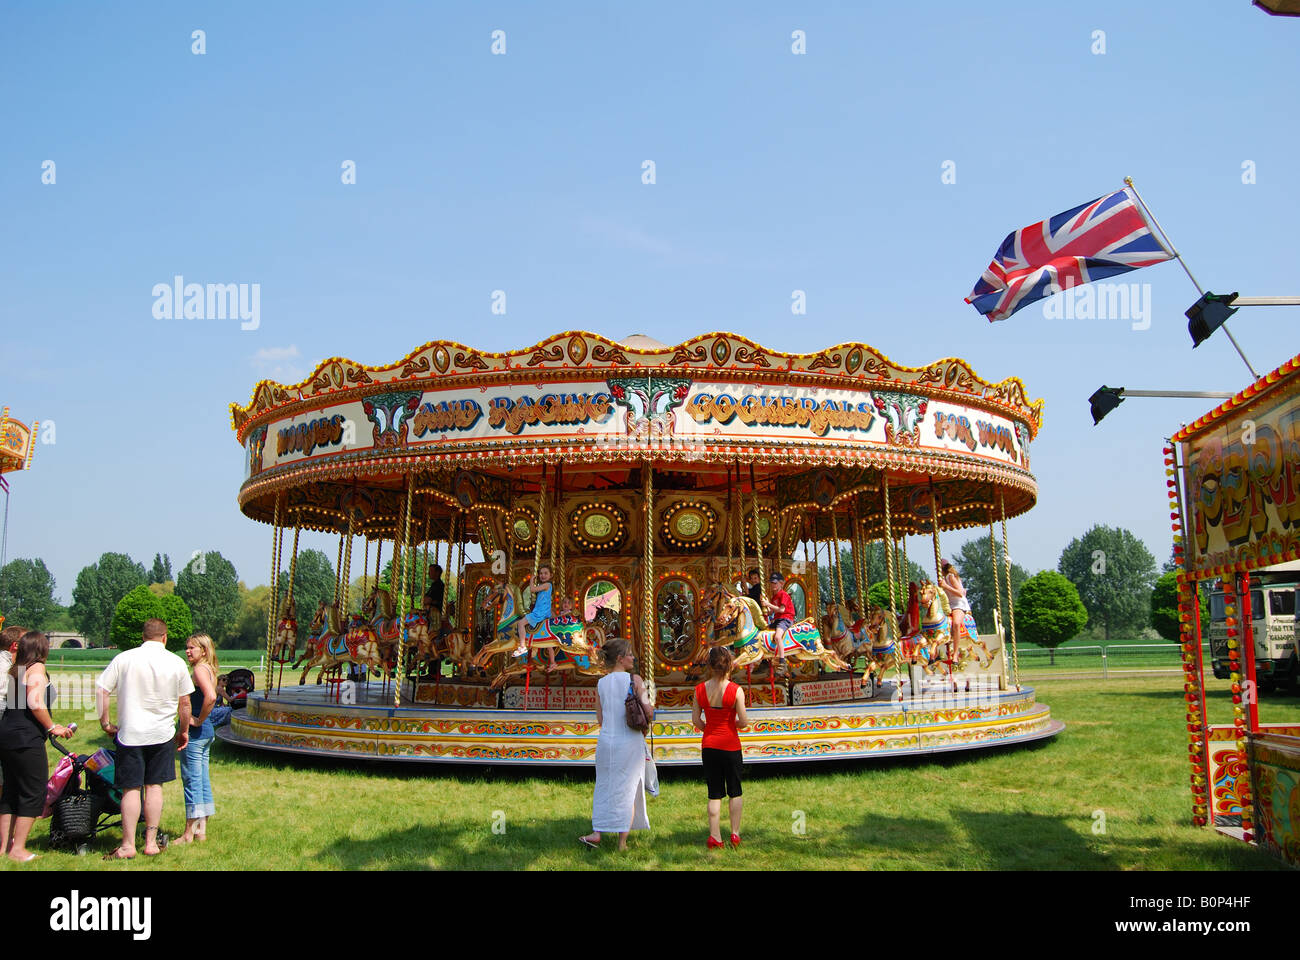 Carrousel pour enfants, Royal Windsor Horse Show, Home Park, Windsor, Berkshire, Angleterre, Royaume-Uni Banque D'Images